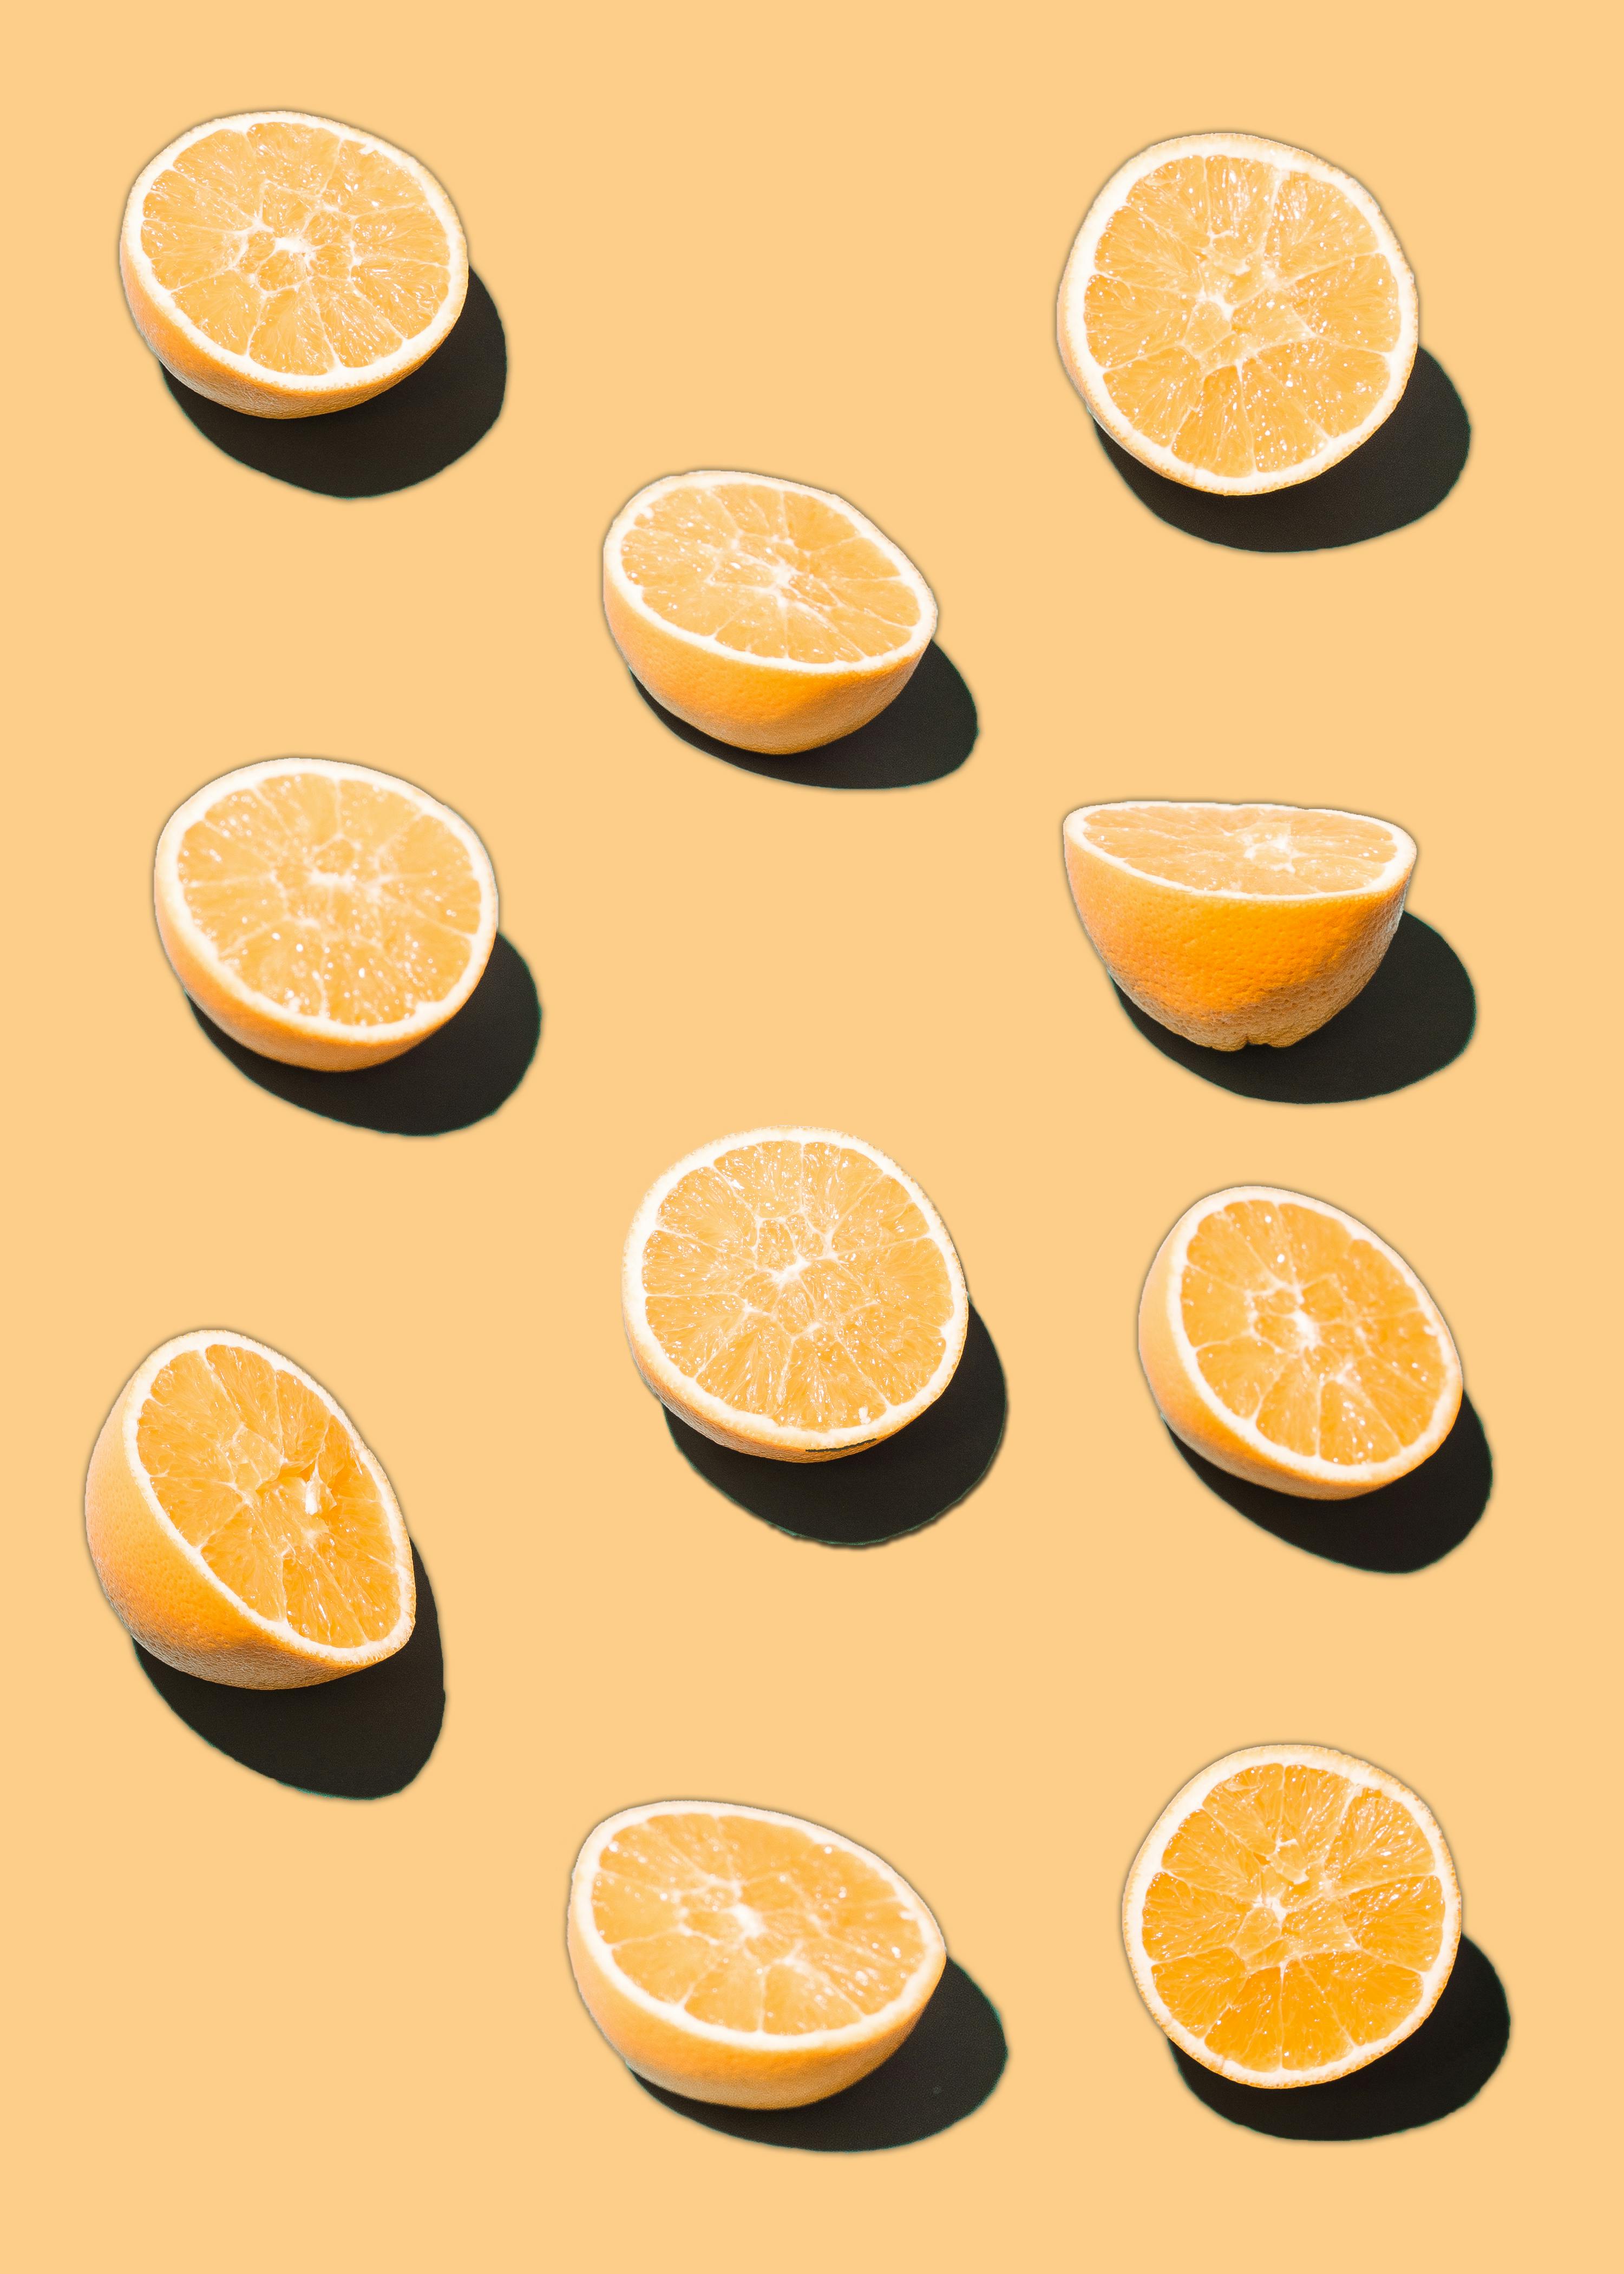 Hình nền màu cam miễn phí: Bạn muốn trang trí cho màn hình máy tính của mình một cách thật độc đáo và sáng tạo? Tìm kiếm những hình nền màu cam miễn phí và trang trí cho màn hình của bạn bằng những gam màu sôi động và rực rỡ của màu cam.